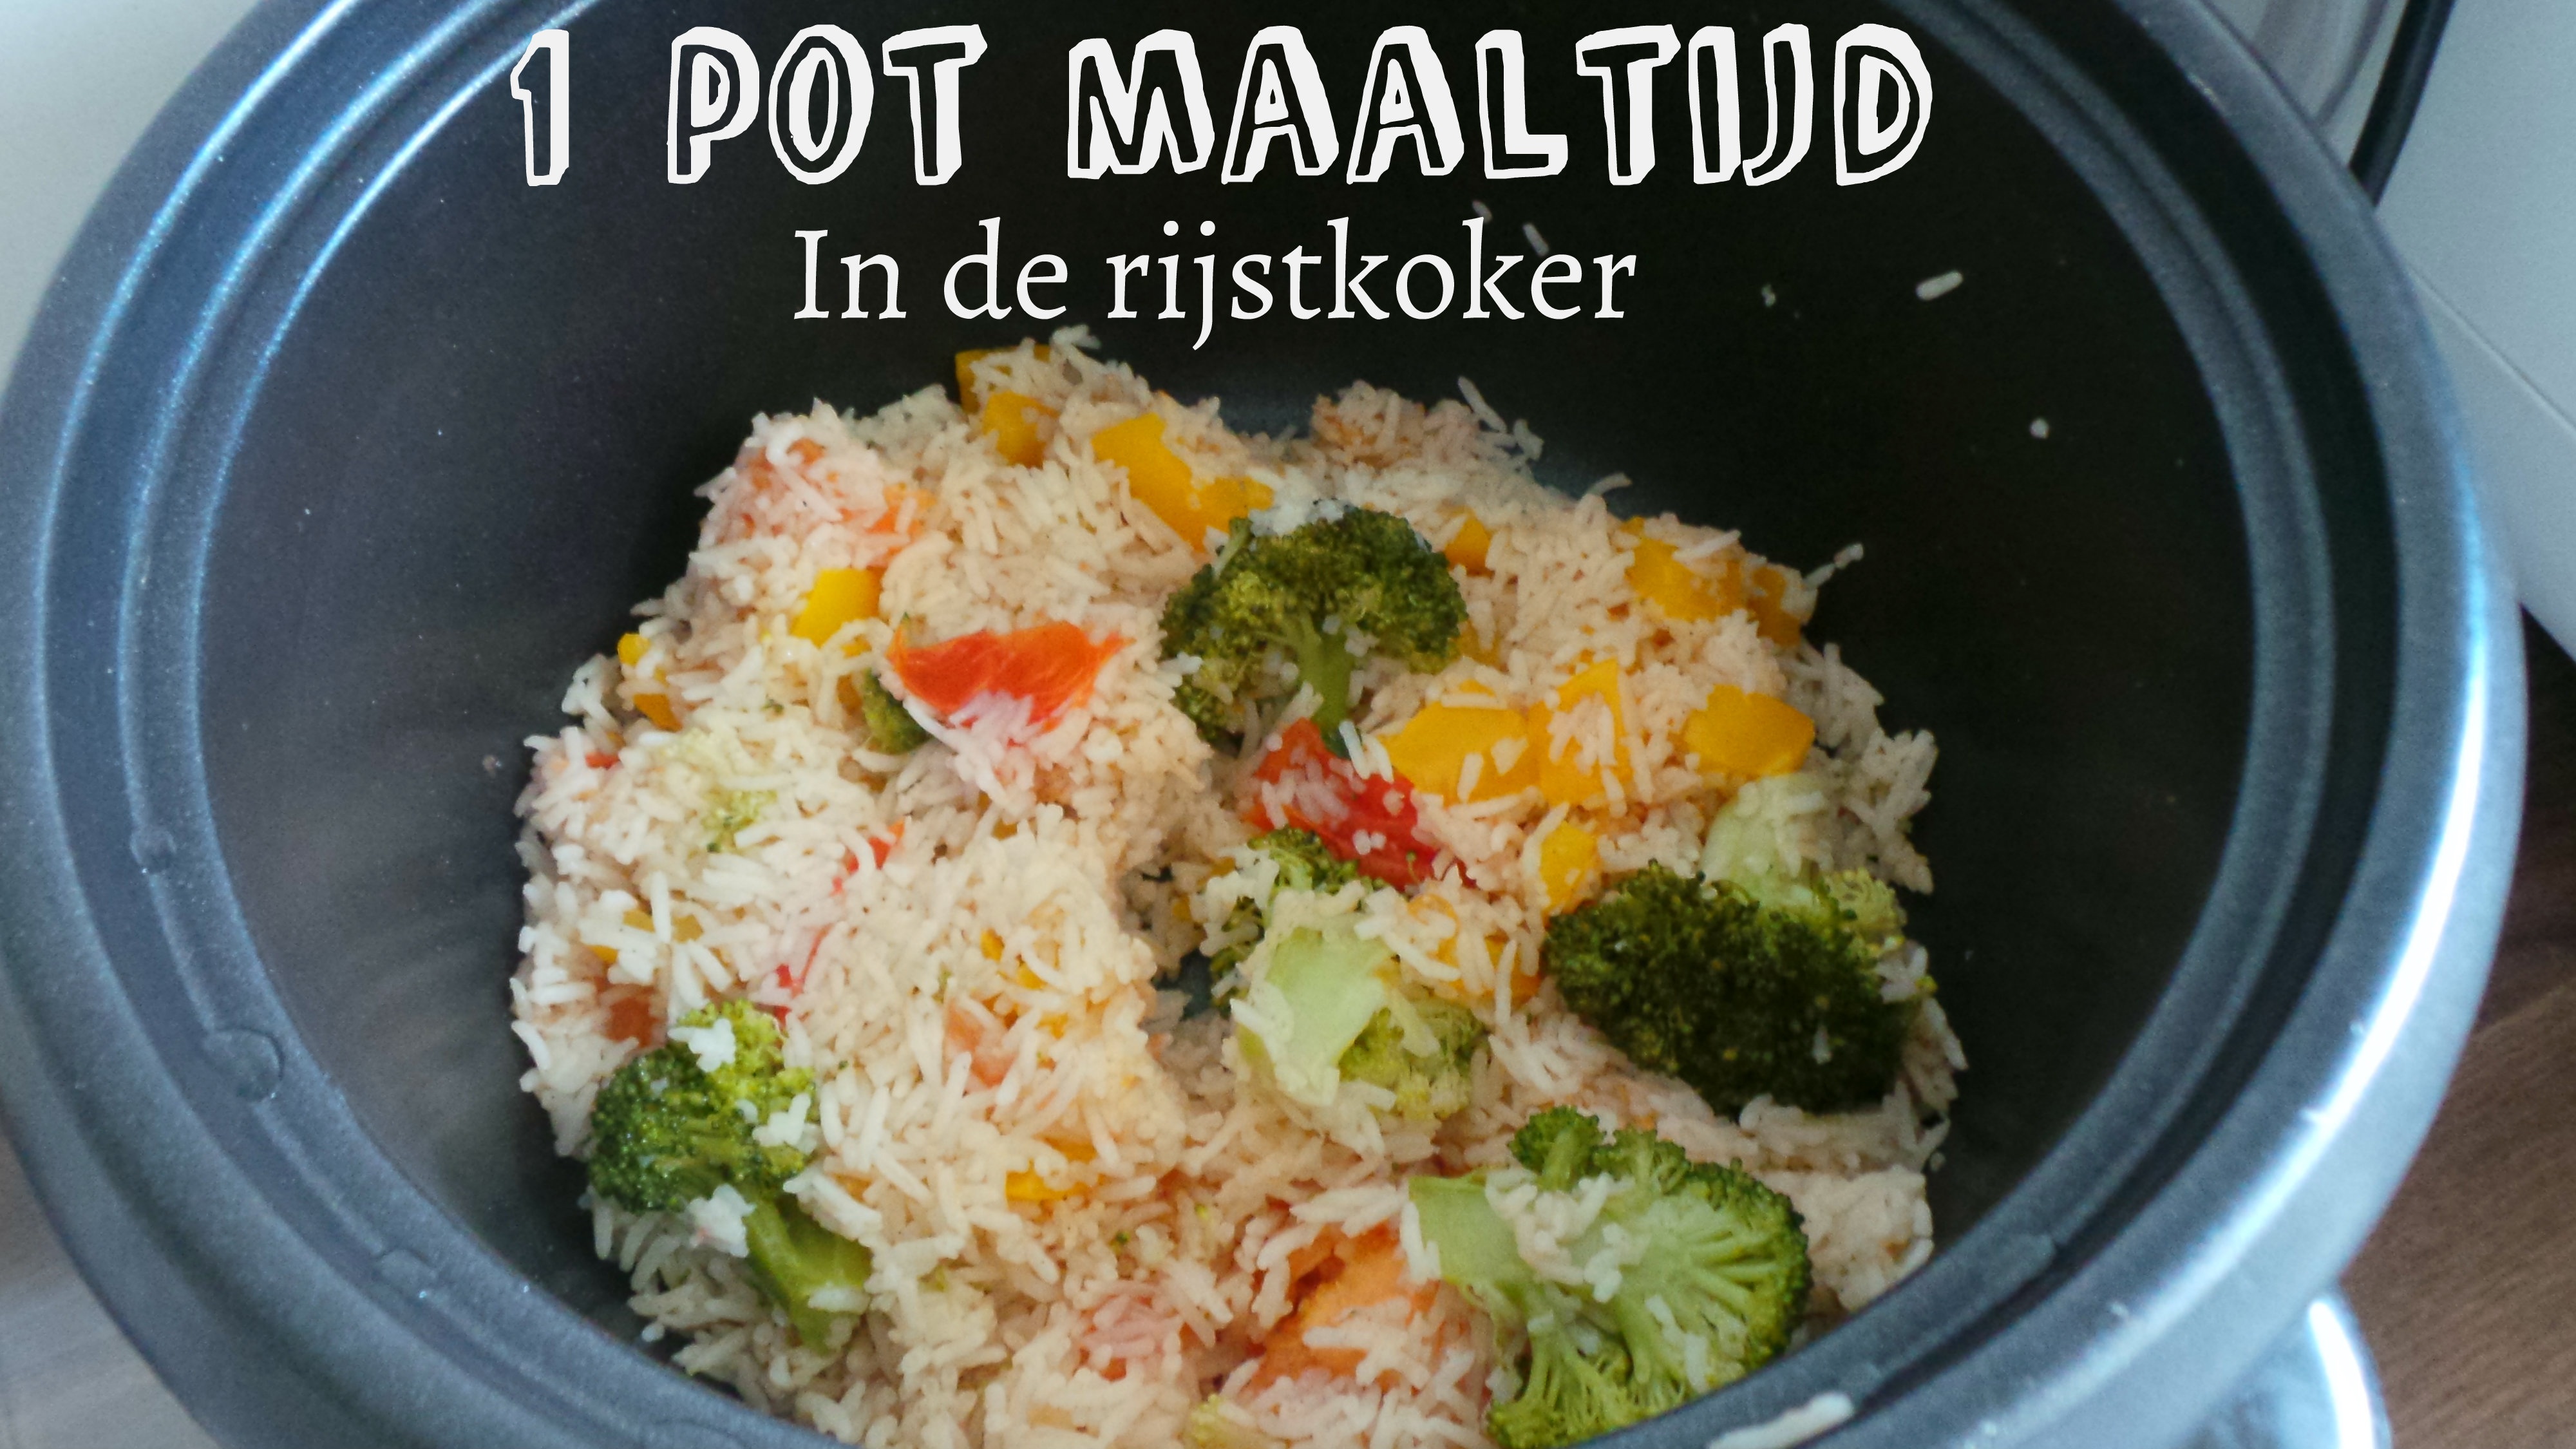 Cilia Permanent Antipoison 1 pot maaltijd in de rijstkoker - Lifehack Recept - Tasty Nilou's